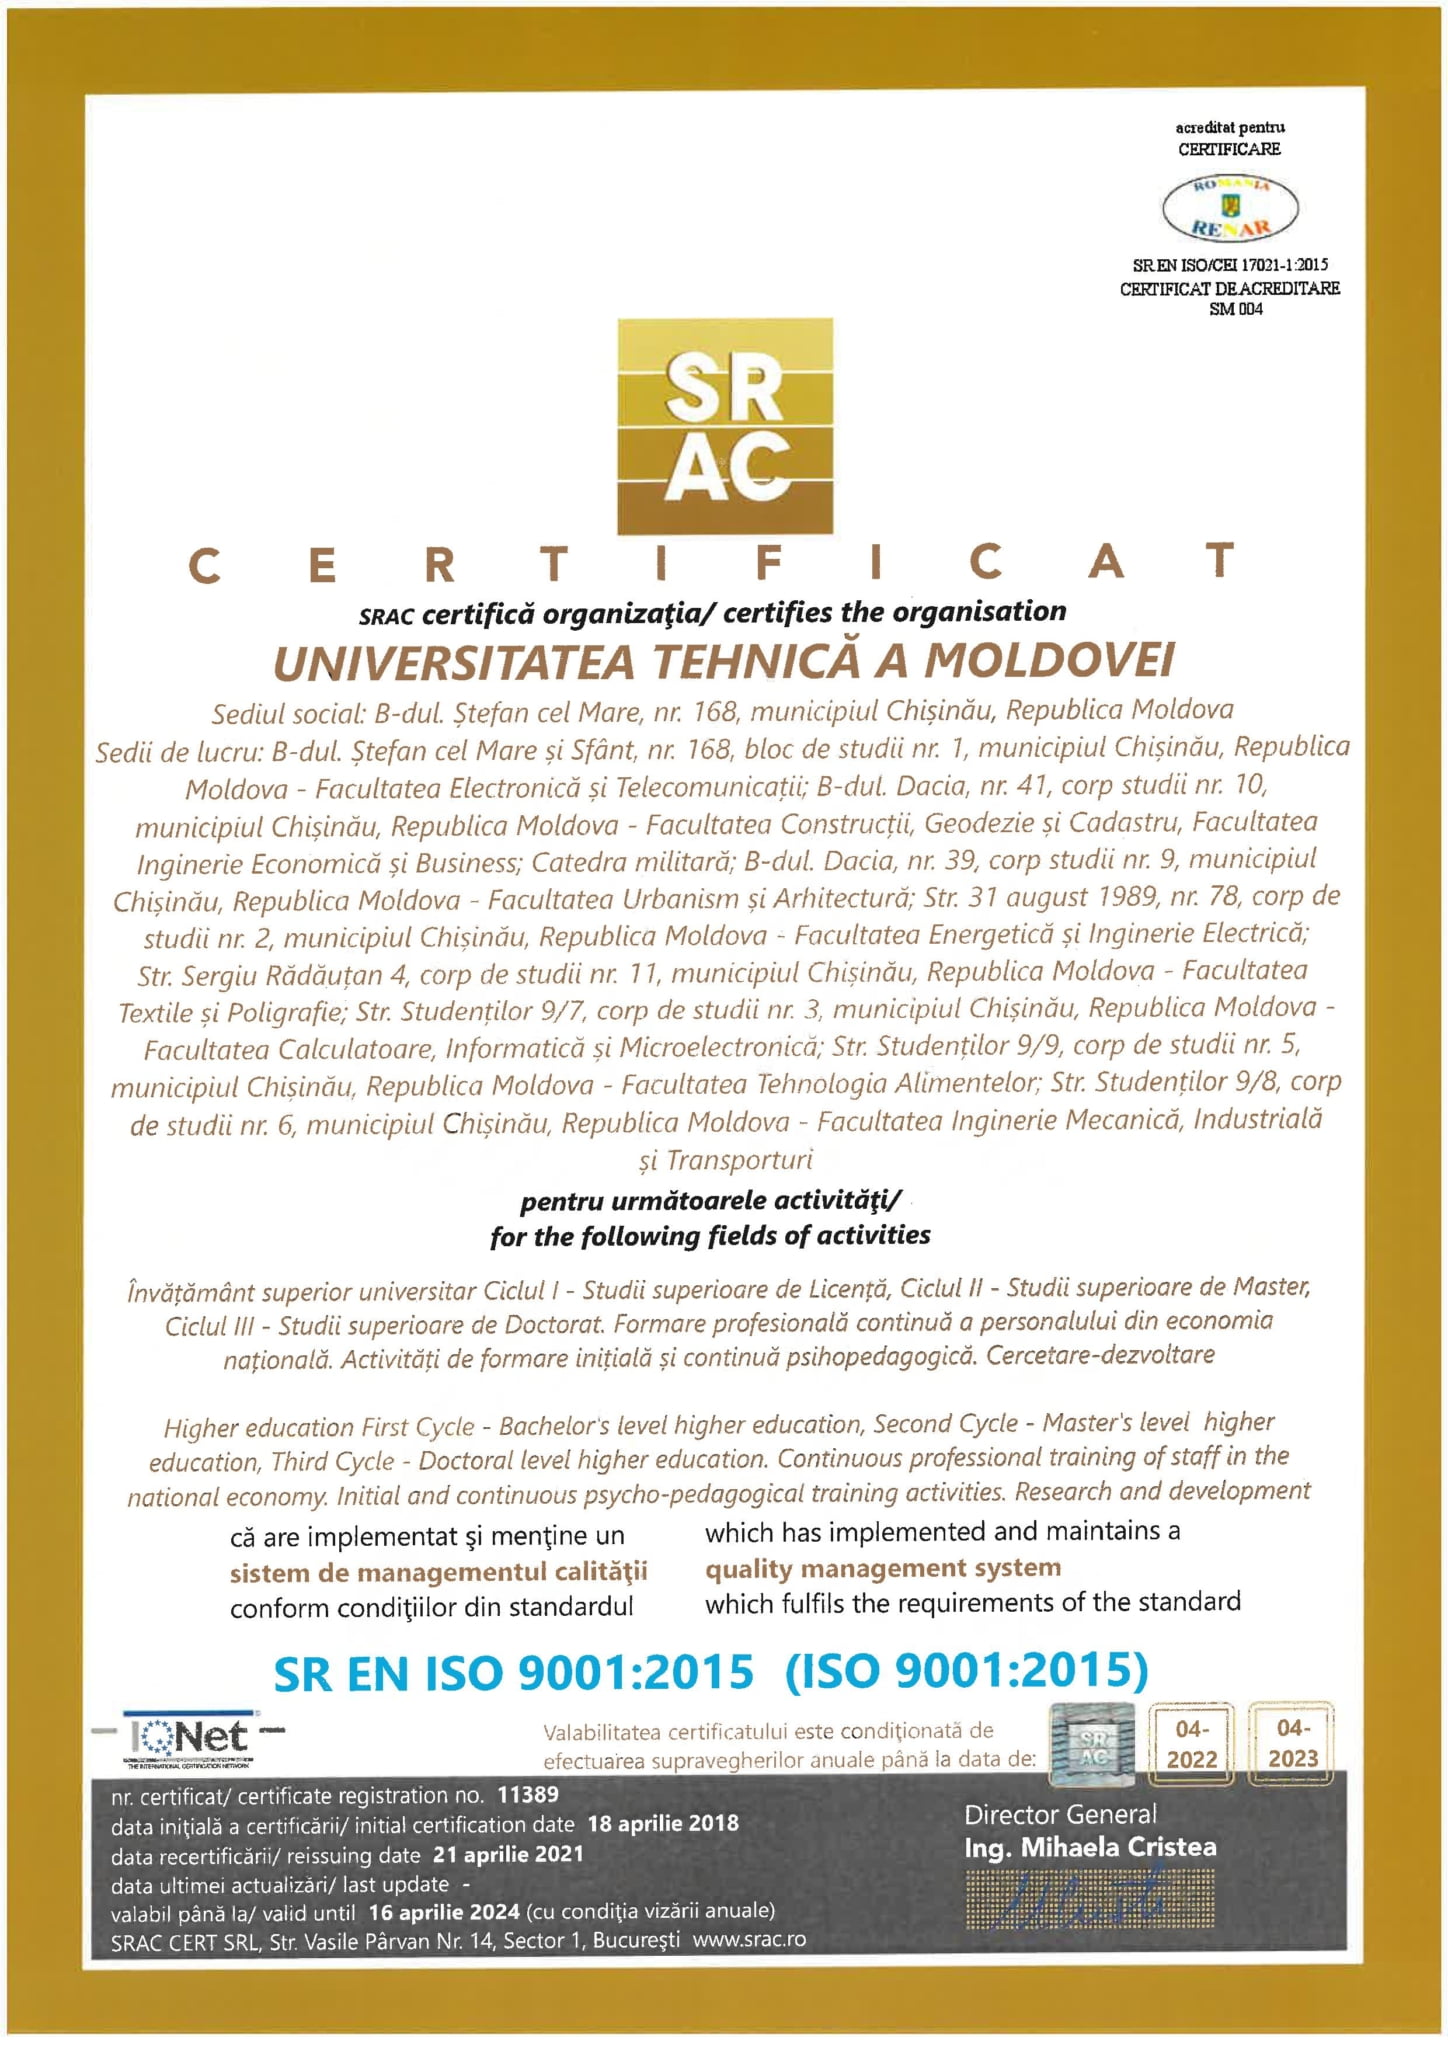 Certificat SMC UTM 2021 1 scaled